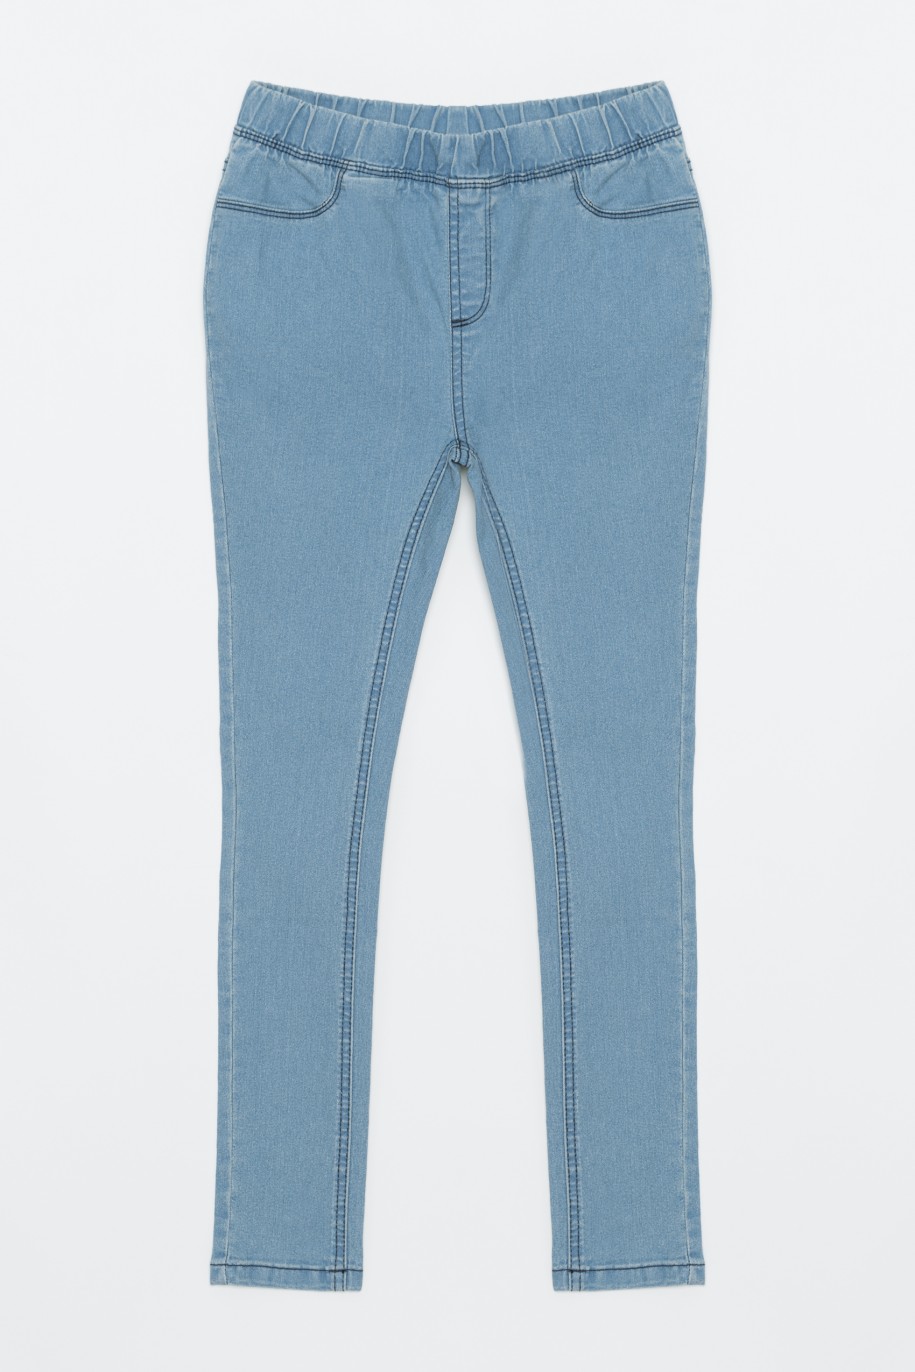 Niebieskie spodnie jegginsy dla dziewczyny - 33119